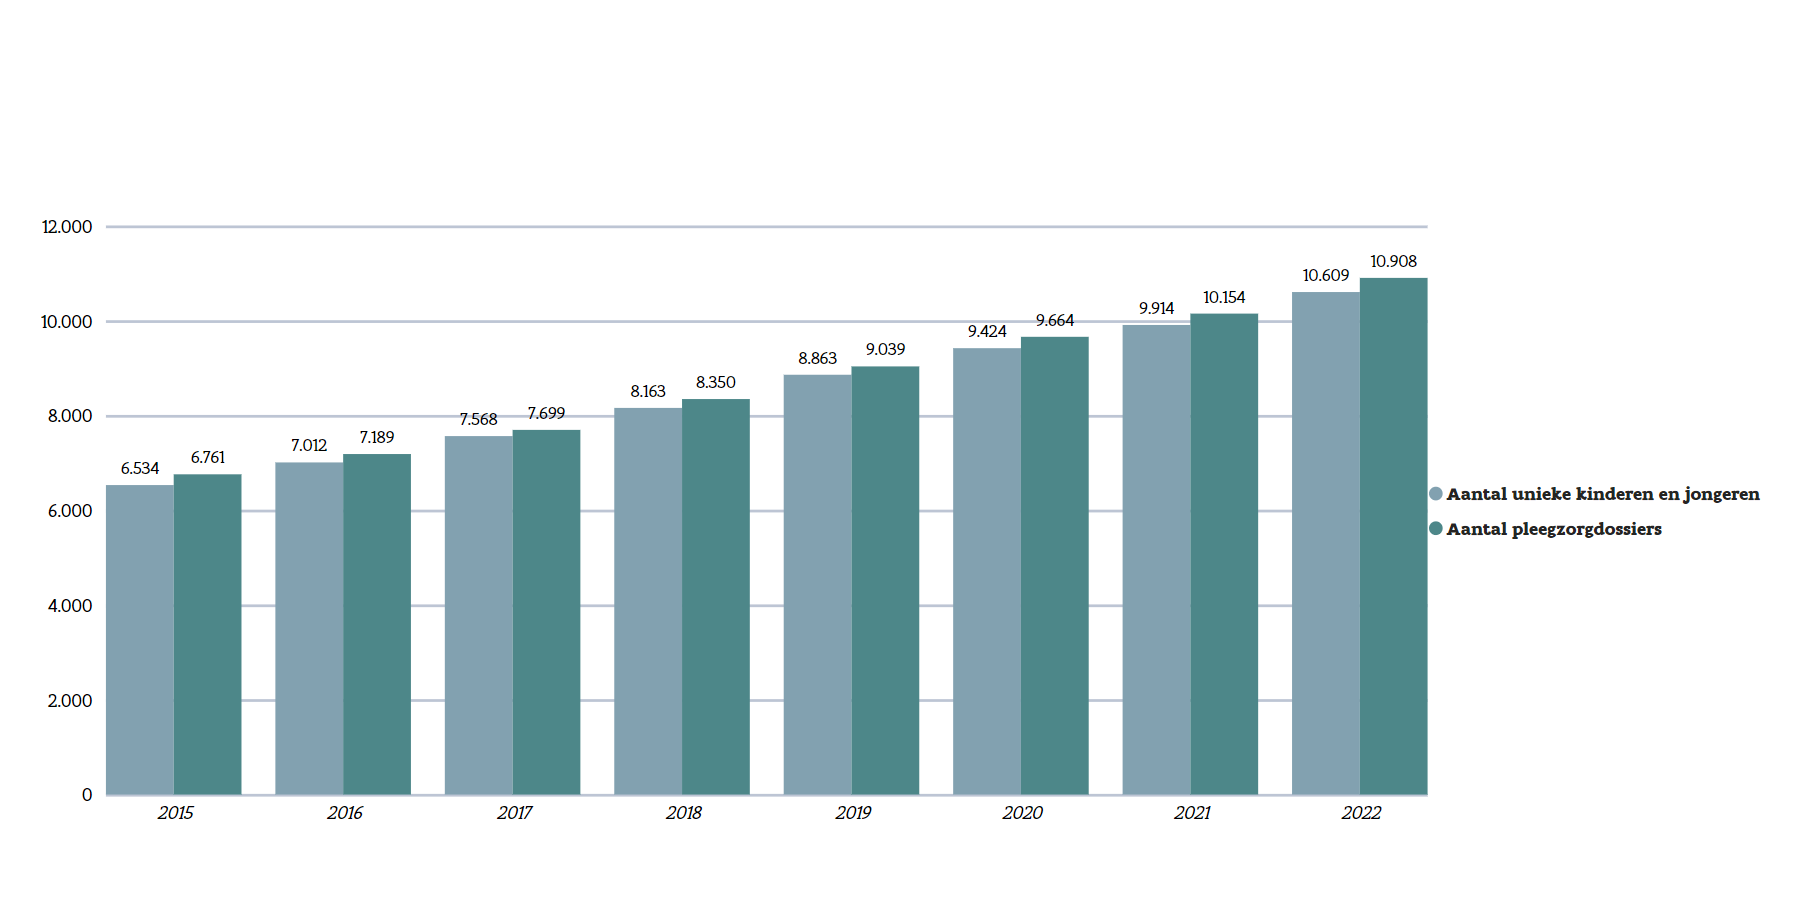 Grafiek I: Aantal unieke pleegkinderen & -pleegjongeren ​
en aantal pleegzorgdossiers (2015-2022)
Bron: Opgroeien